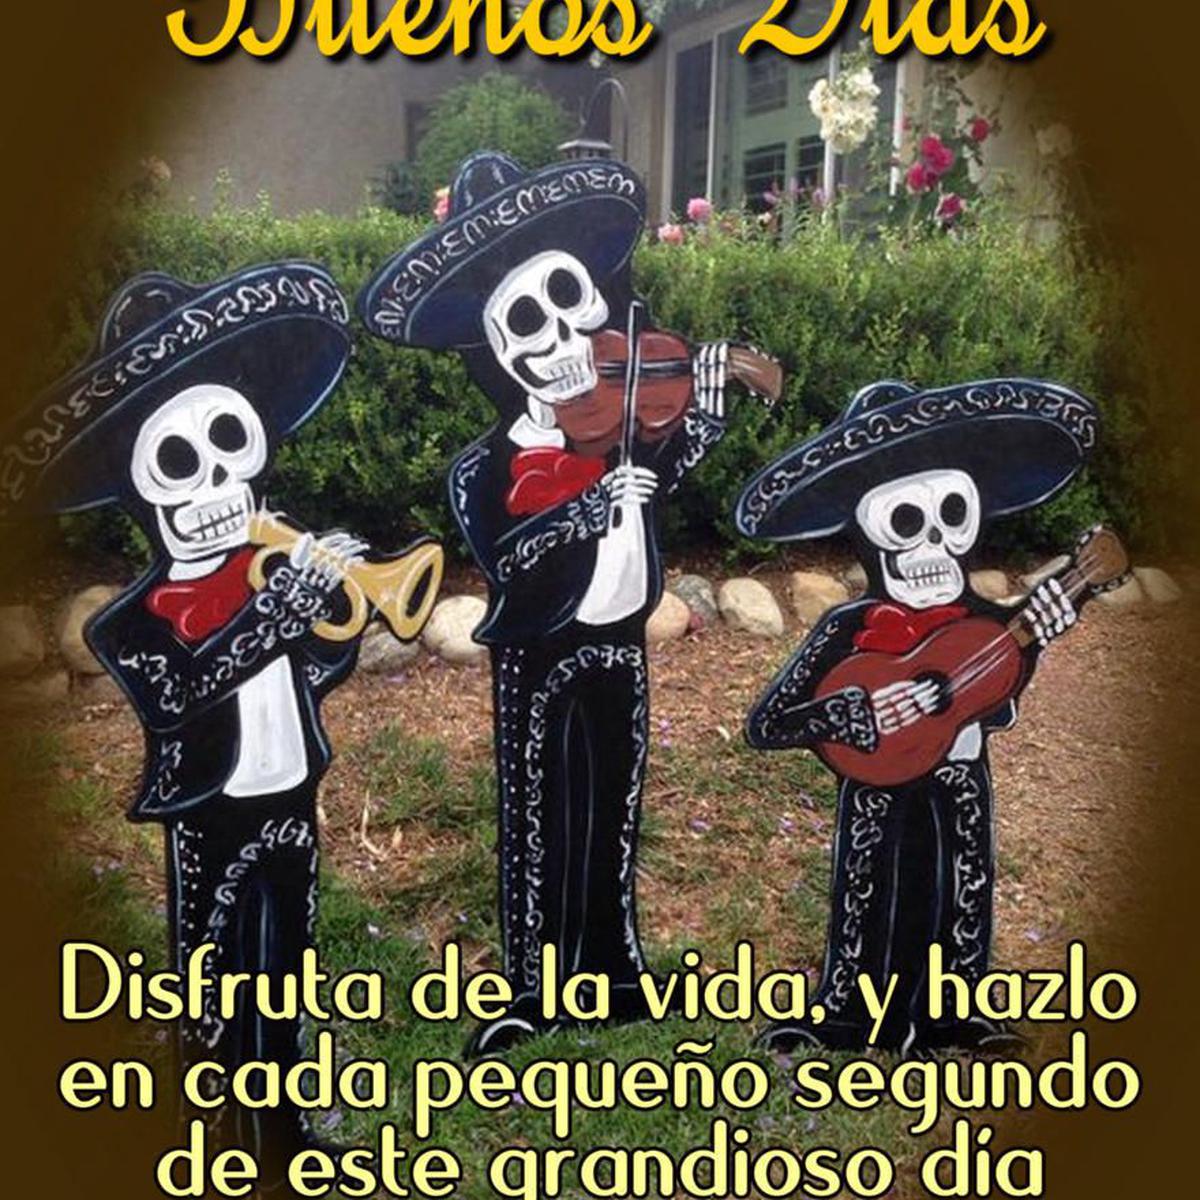 Día de Muertos: frases, imágenes y saludos de buenos días para compartir  hoy 1 y 2 de noviembre en Facebook, WhatsApp e Instagram | FOTOS | Buen 'Día  de los Muertos' | Redes Sociales | MEXICO | DEPOR